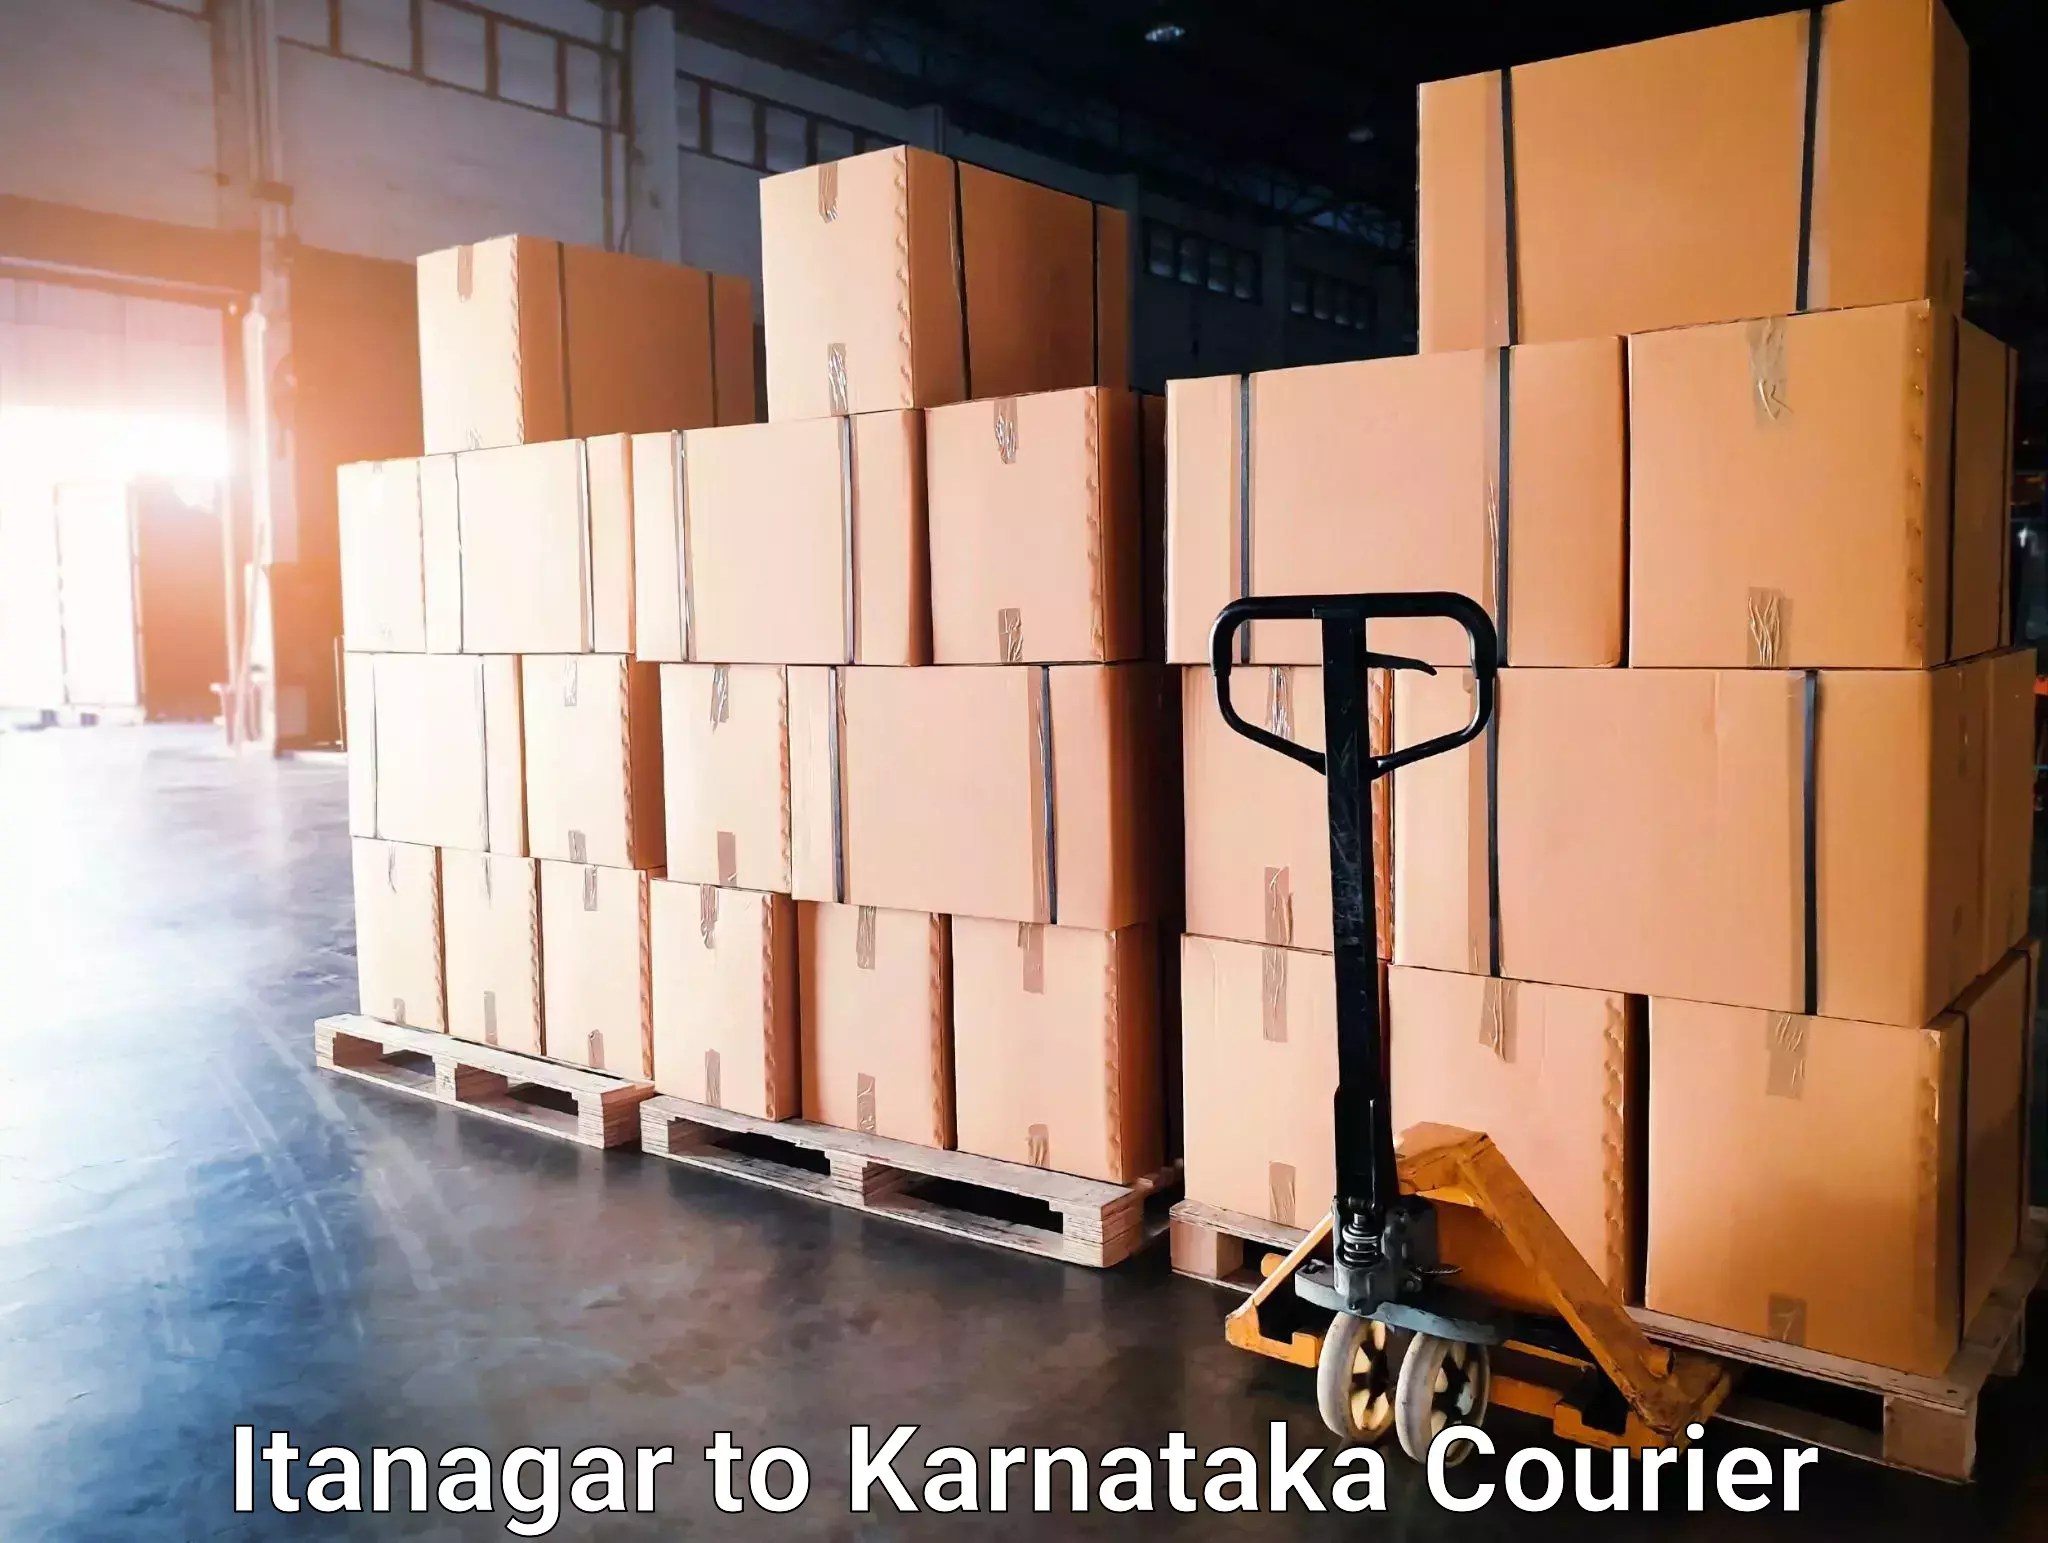 Courier service comparison Itanagar to Guledagudda